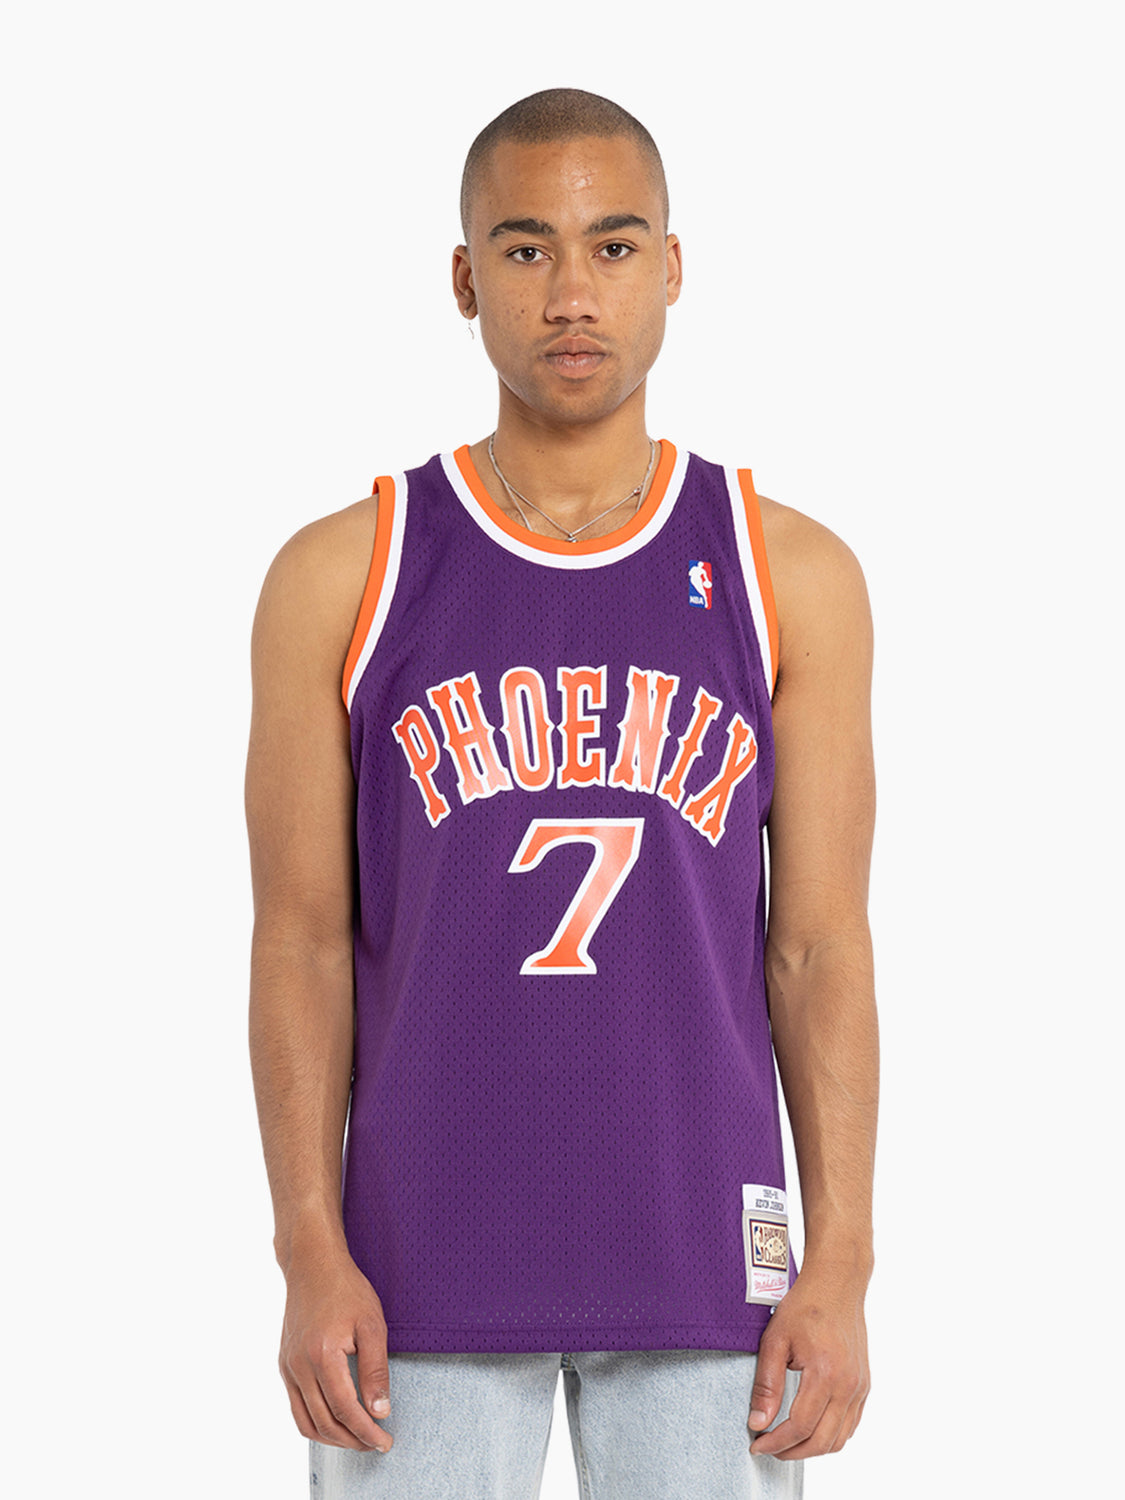 Mitchell & Ness Phoenix Suns Kevin Johnson 89-90 Swingman Jersey, NBA  Jerseys